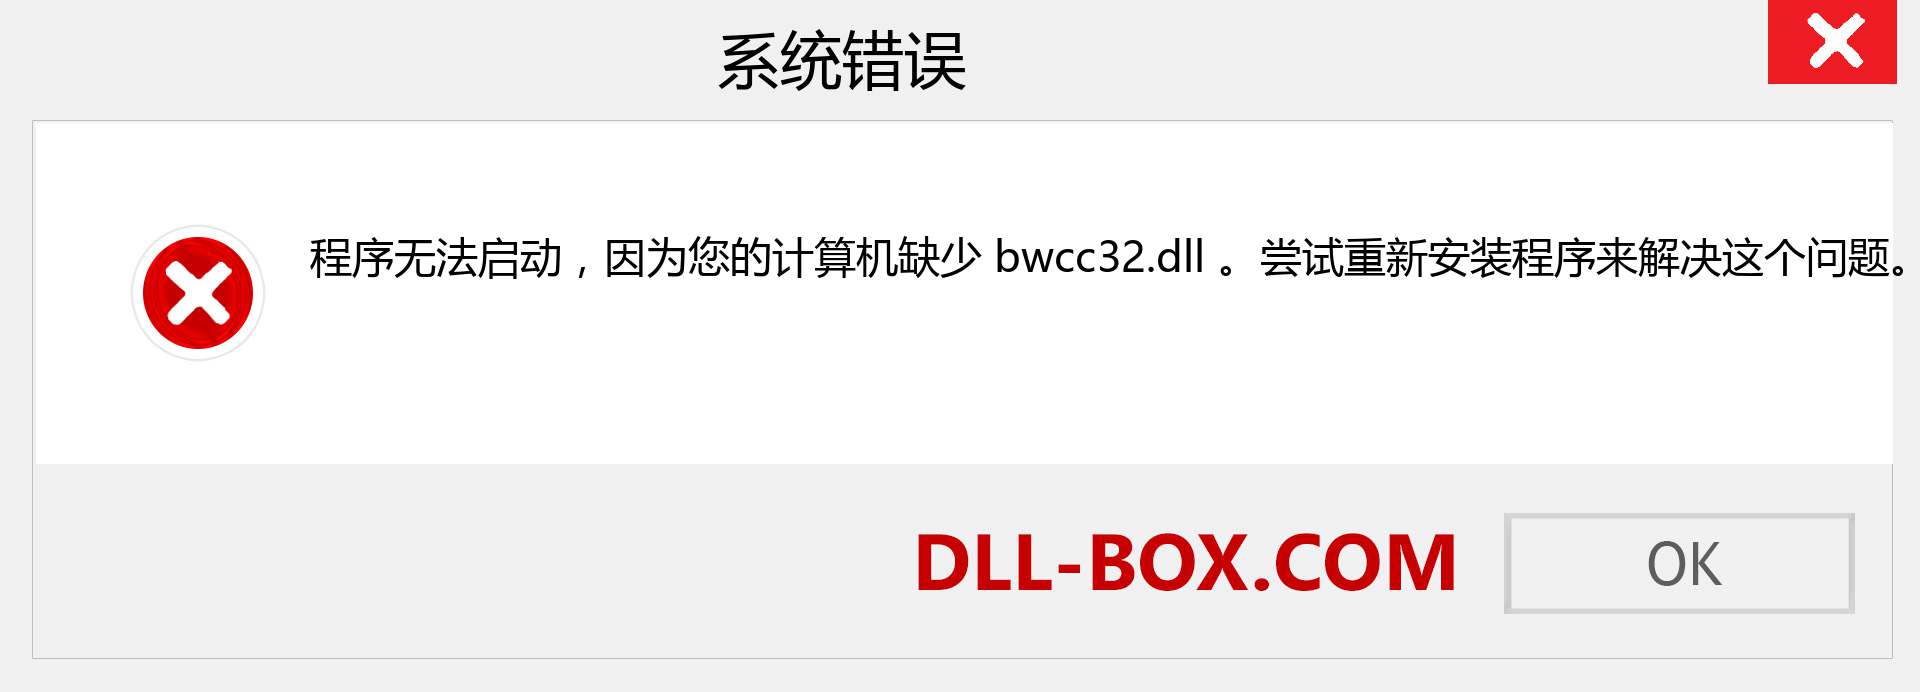 bwcc32.dll 文件丢失？。 适用于 Windows 7、8、10 的下载 - 修复 Windows、照片、图像上的 bwcc32 dll 丢失错误